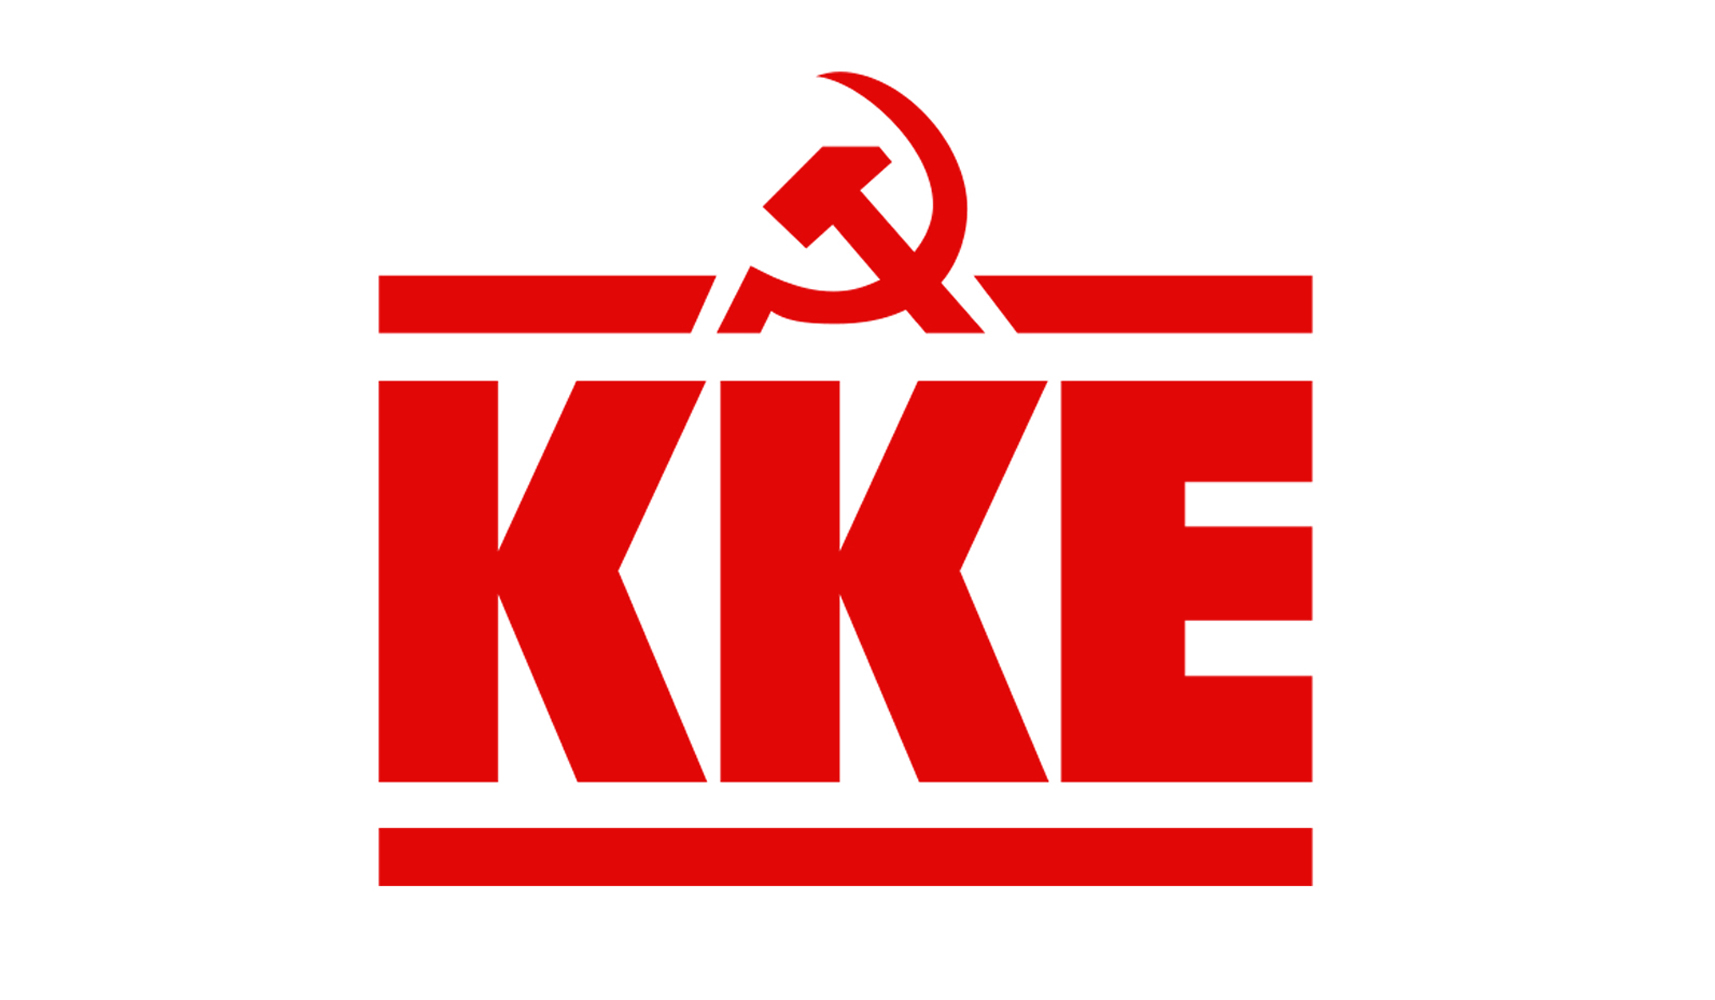 Nessun appoggio al governo. Il popolo deve lanciare il suo contrattacco. Partito Comunista di Grecia (KKE)